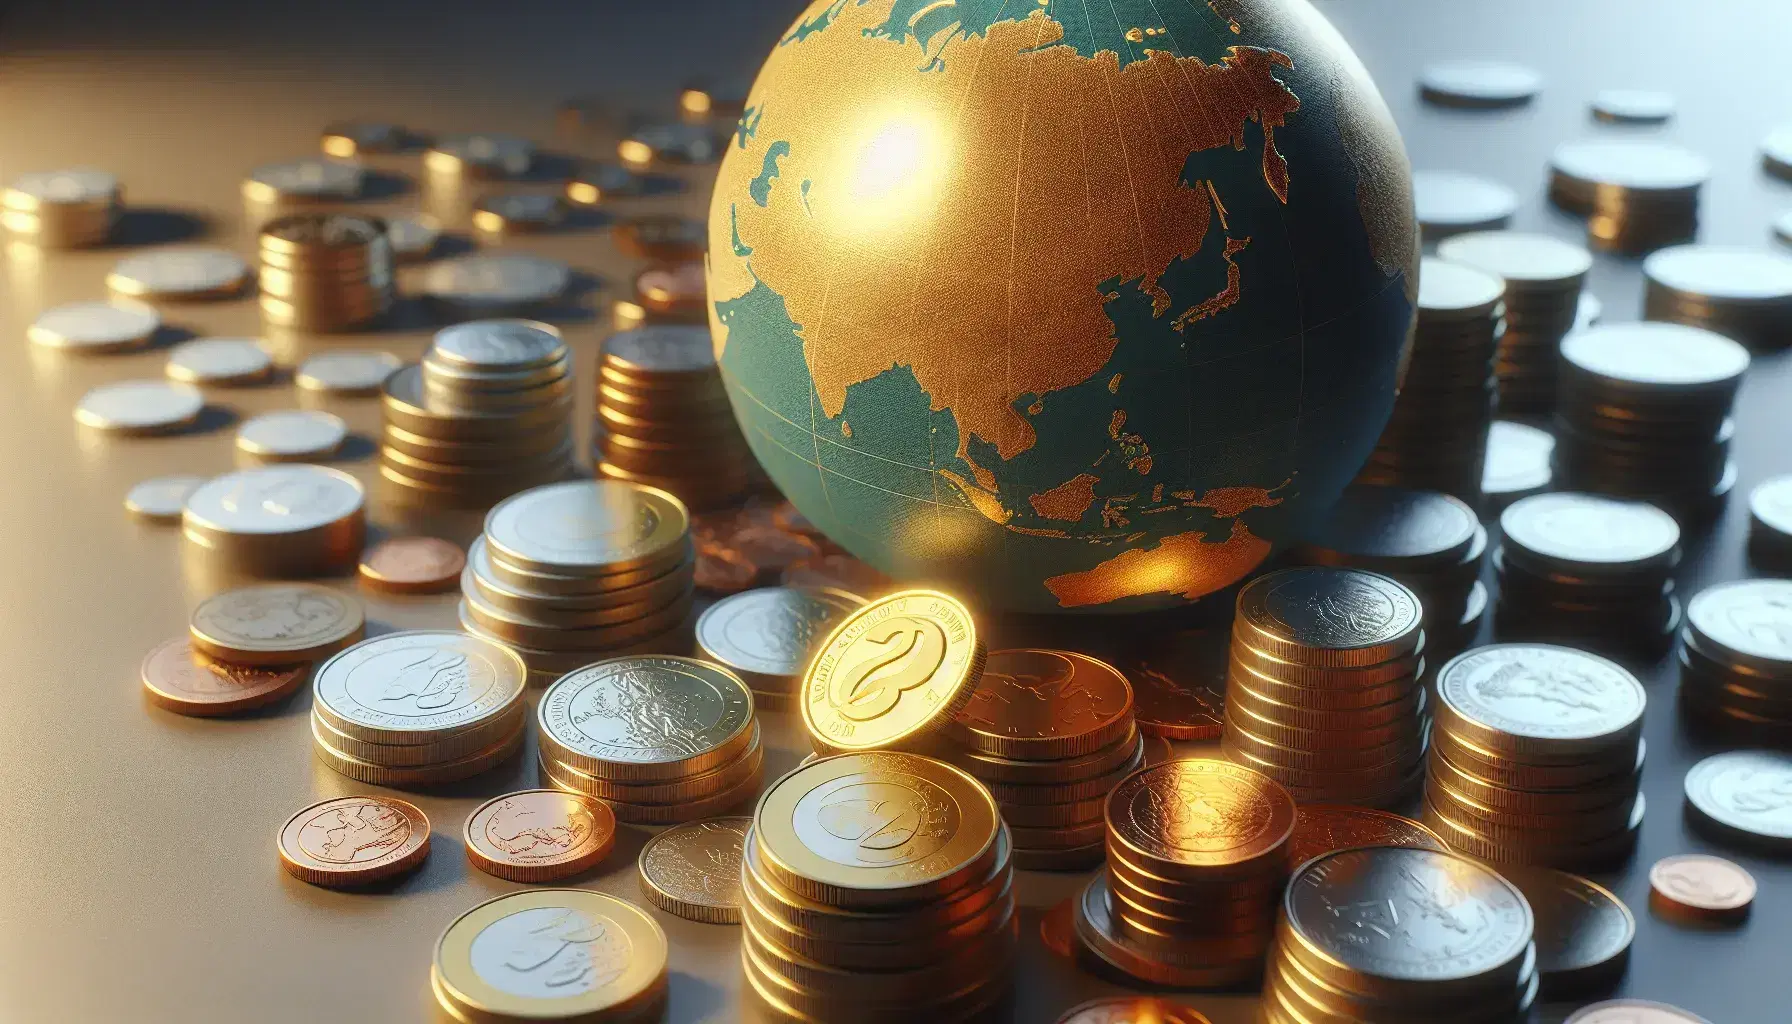 Colección de monedas de distintos tamaños y colores sobre superficie lisa con una moneda dorada central destacada y un globo desenfocado al fondo, simbolizando la economía global.